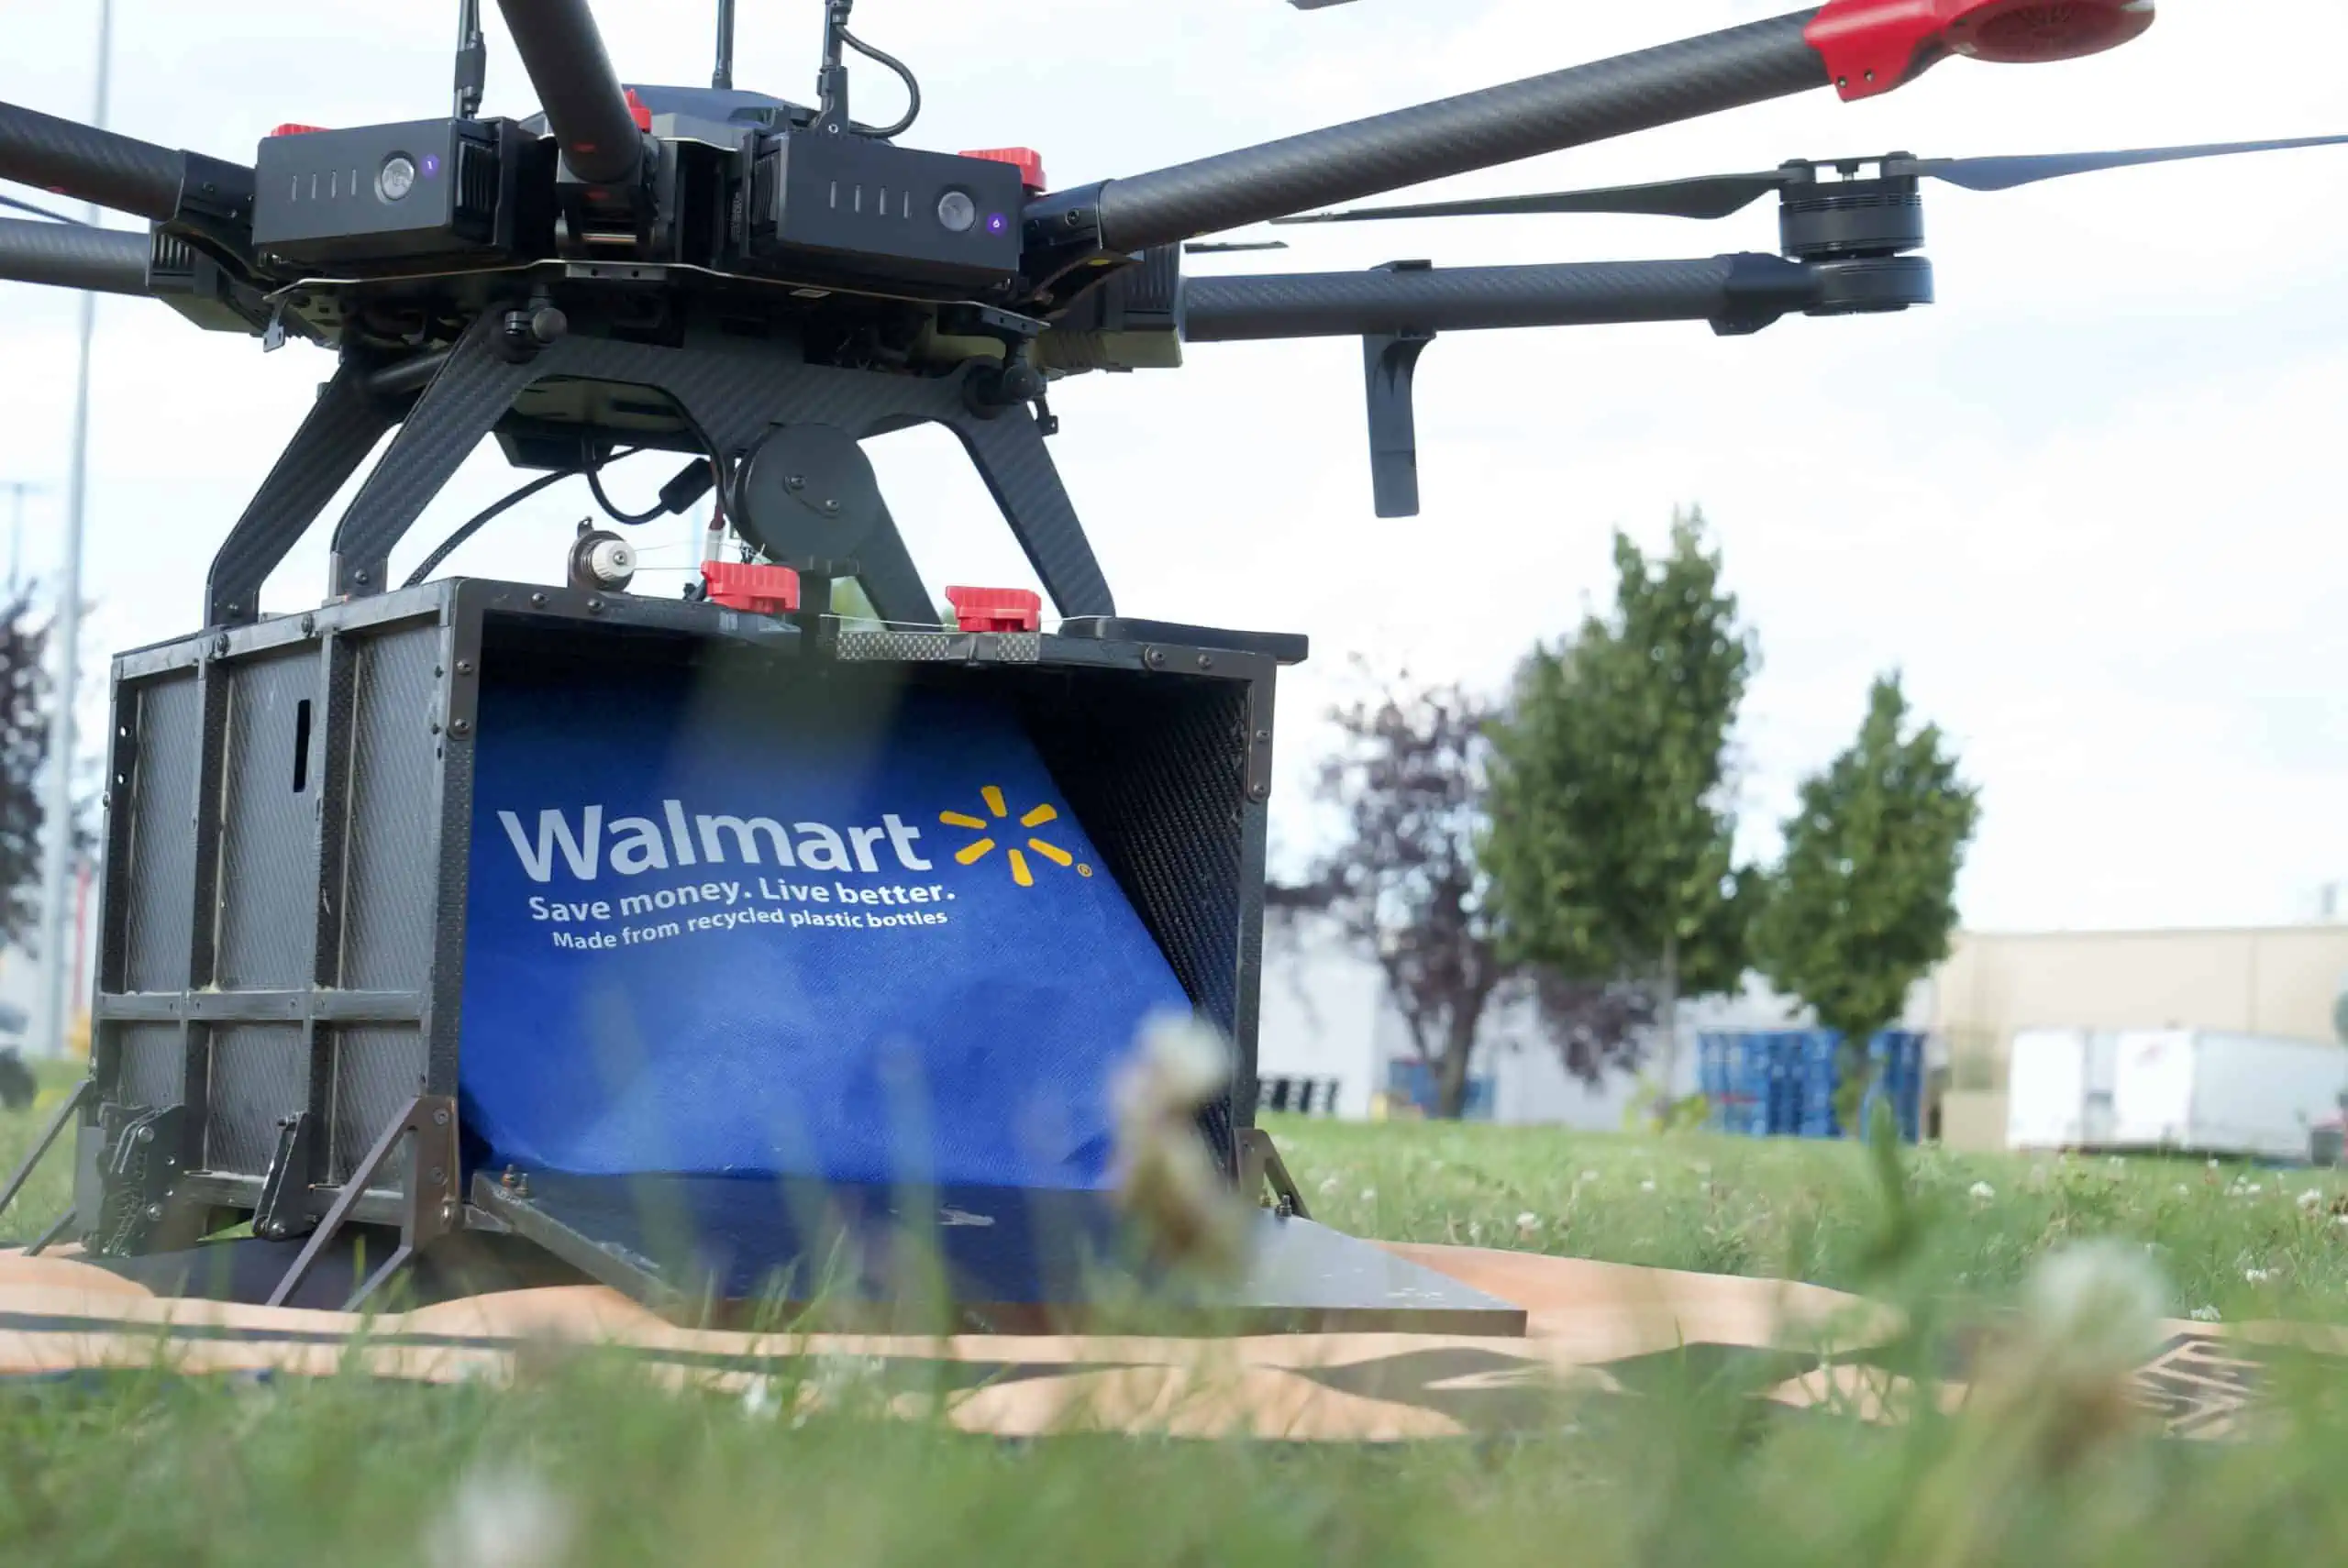 Servizi di consegna con droni aumentati da Walmart